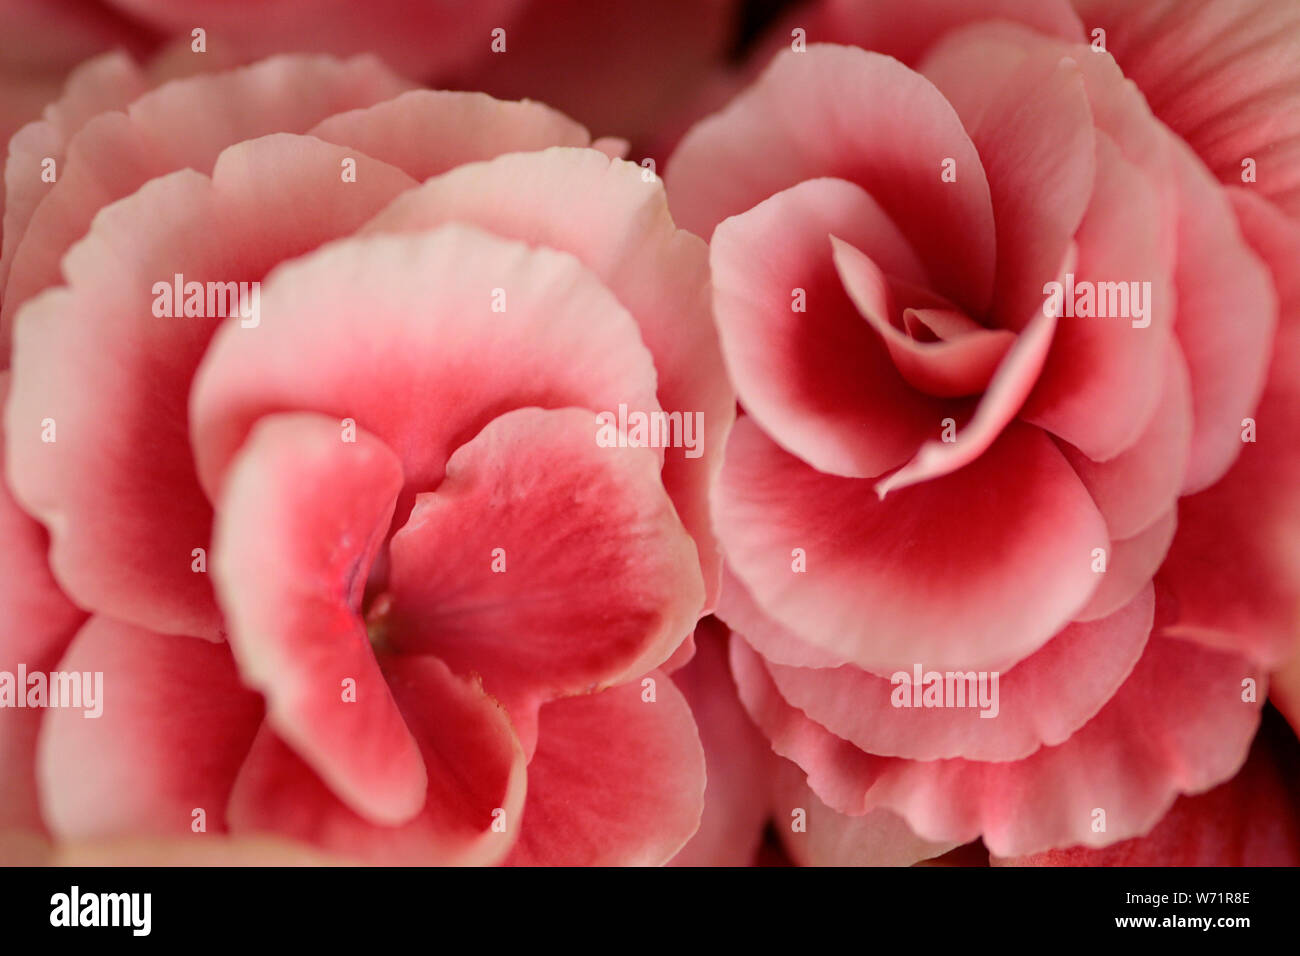 Plante à fleurs bégonia d'intérieur avec son diplôme de pétales de rose rose pâle Banque D'Images